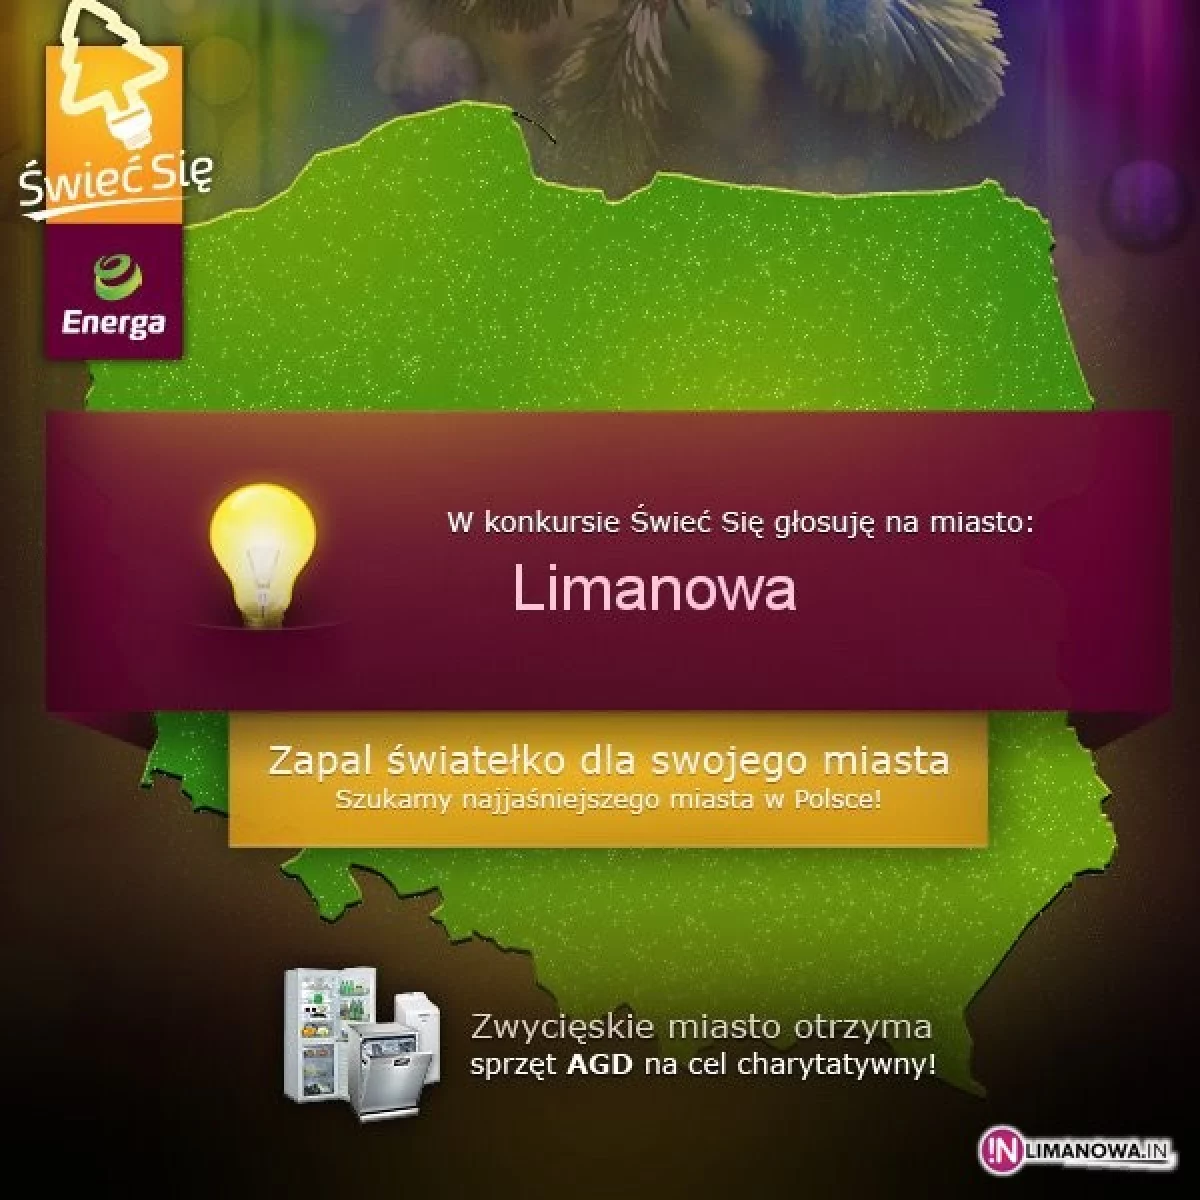 Limanowa rywalizuje o tytuł najpiękniej oświetlonego miasta w Polsce